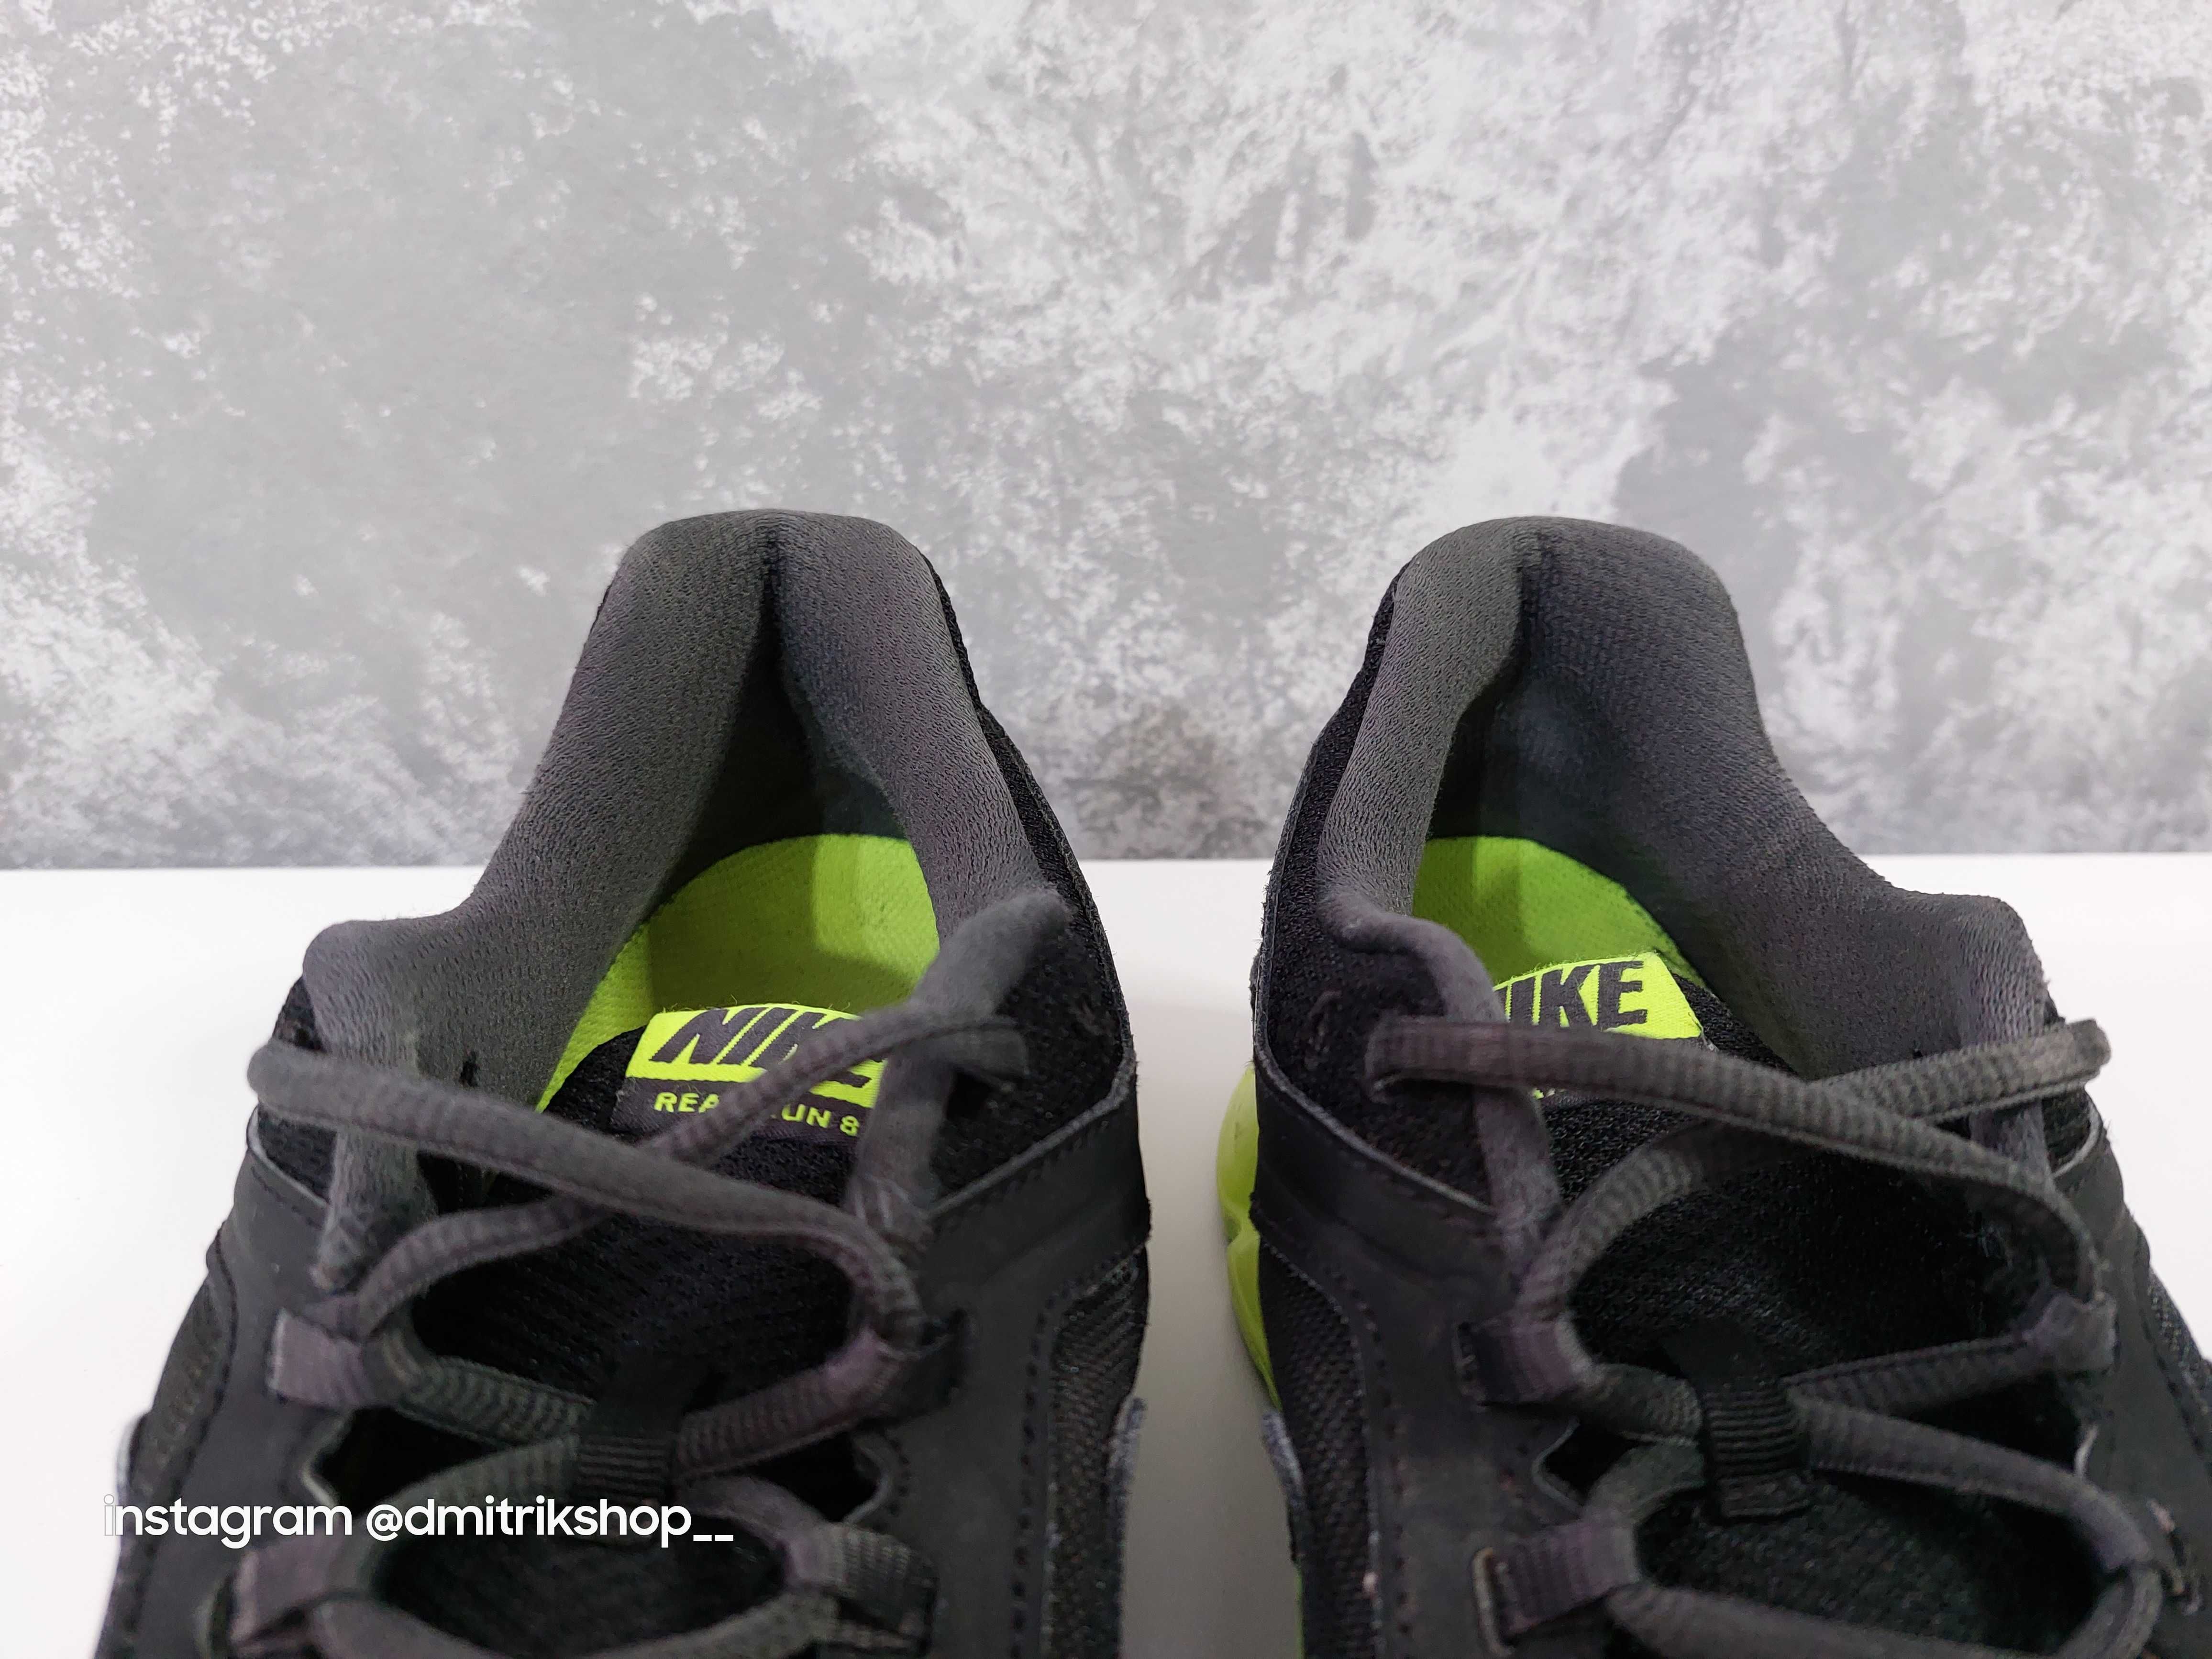 Кросівки чоловічі Nike Reax Run 8 'Black Volt'р44 кроссовки Nike Reax